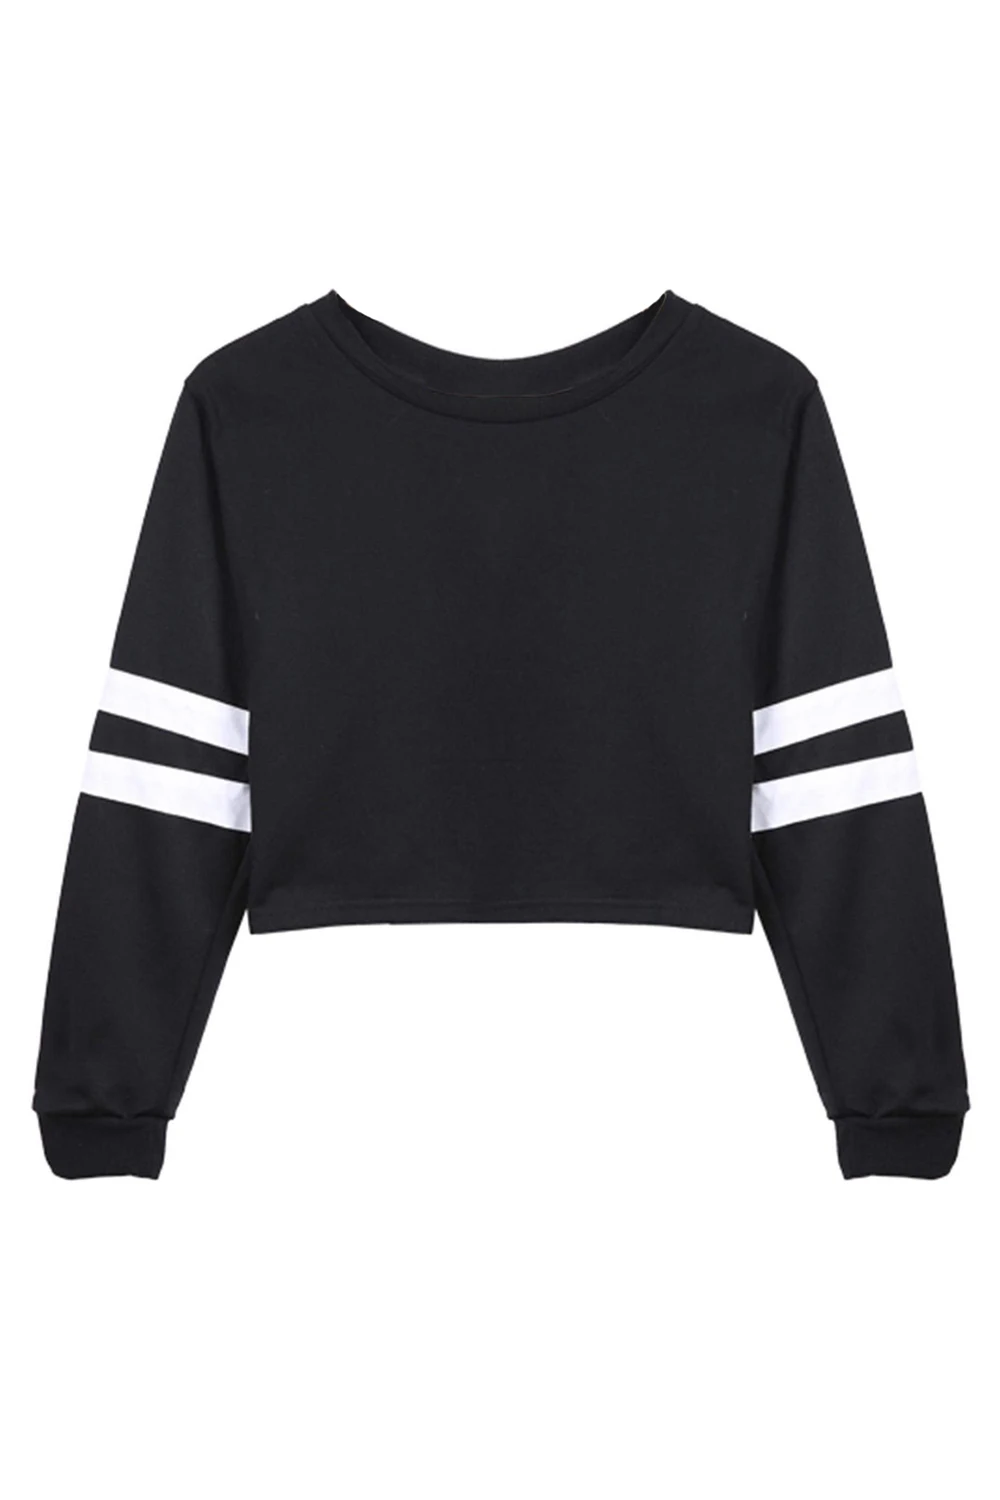 Новый Для женщин О-образным вырезом пупка-наружная пуловер с длинными рукавами Топ черный S